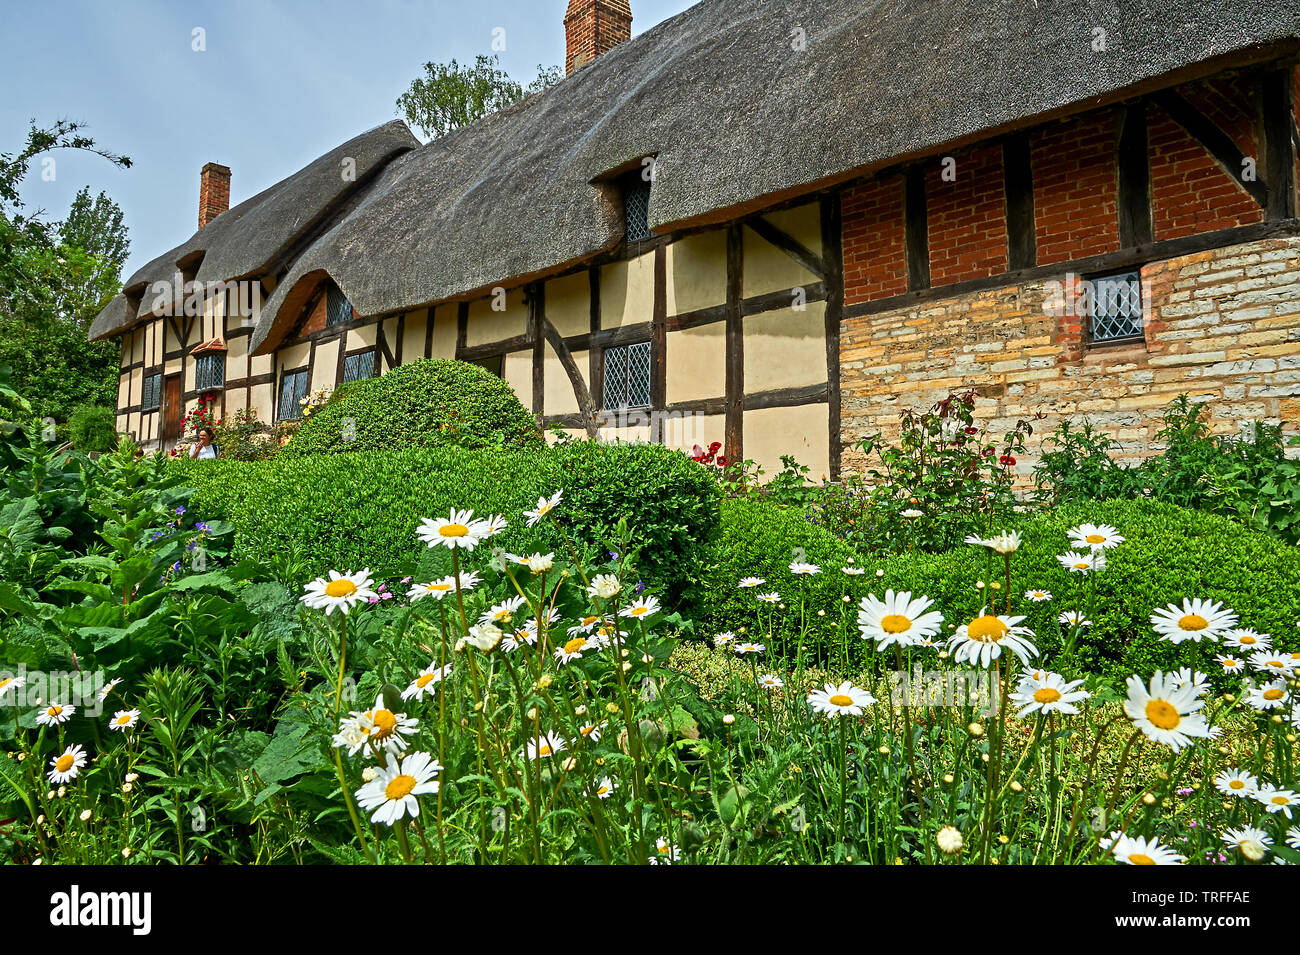 Anne Hathaway's Cottage in Shottery, Stratford Upon Avon, ist ein mittelalterliches Fachwerkhaus Gebäude und Haus von William Shakespeares Frau. Stockfoto